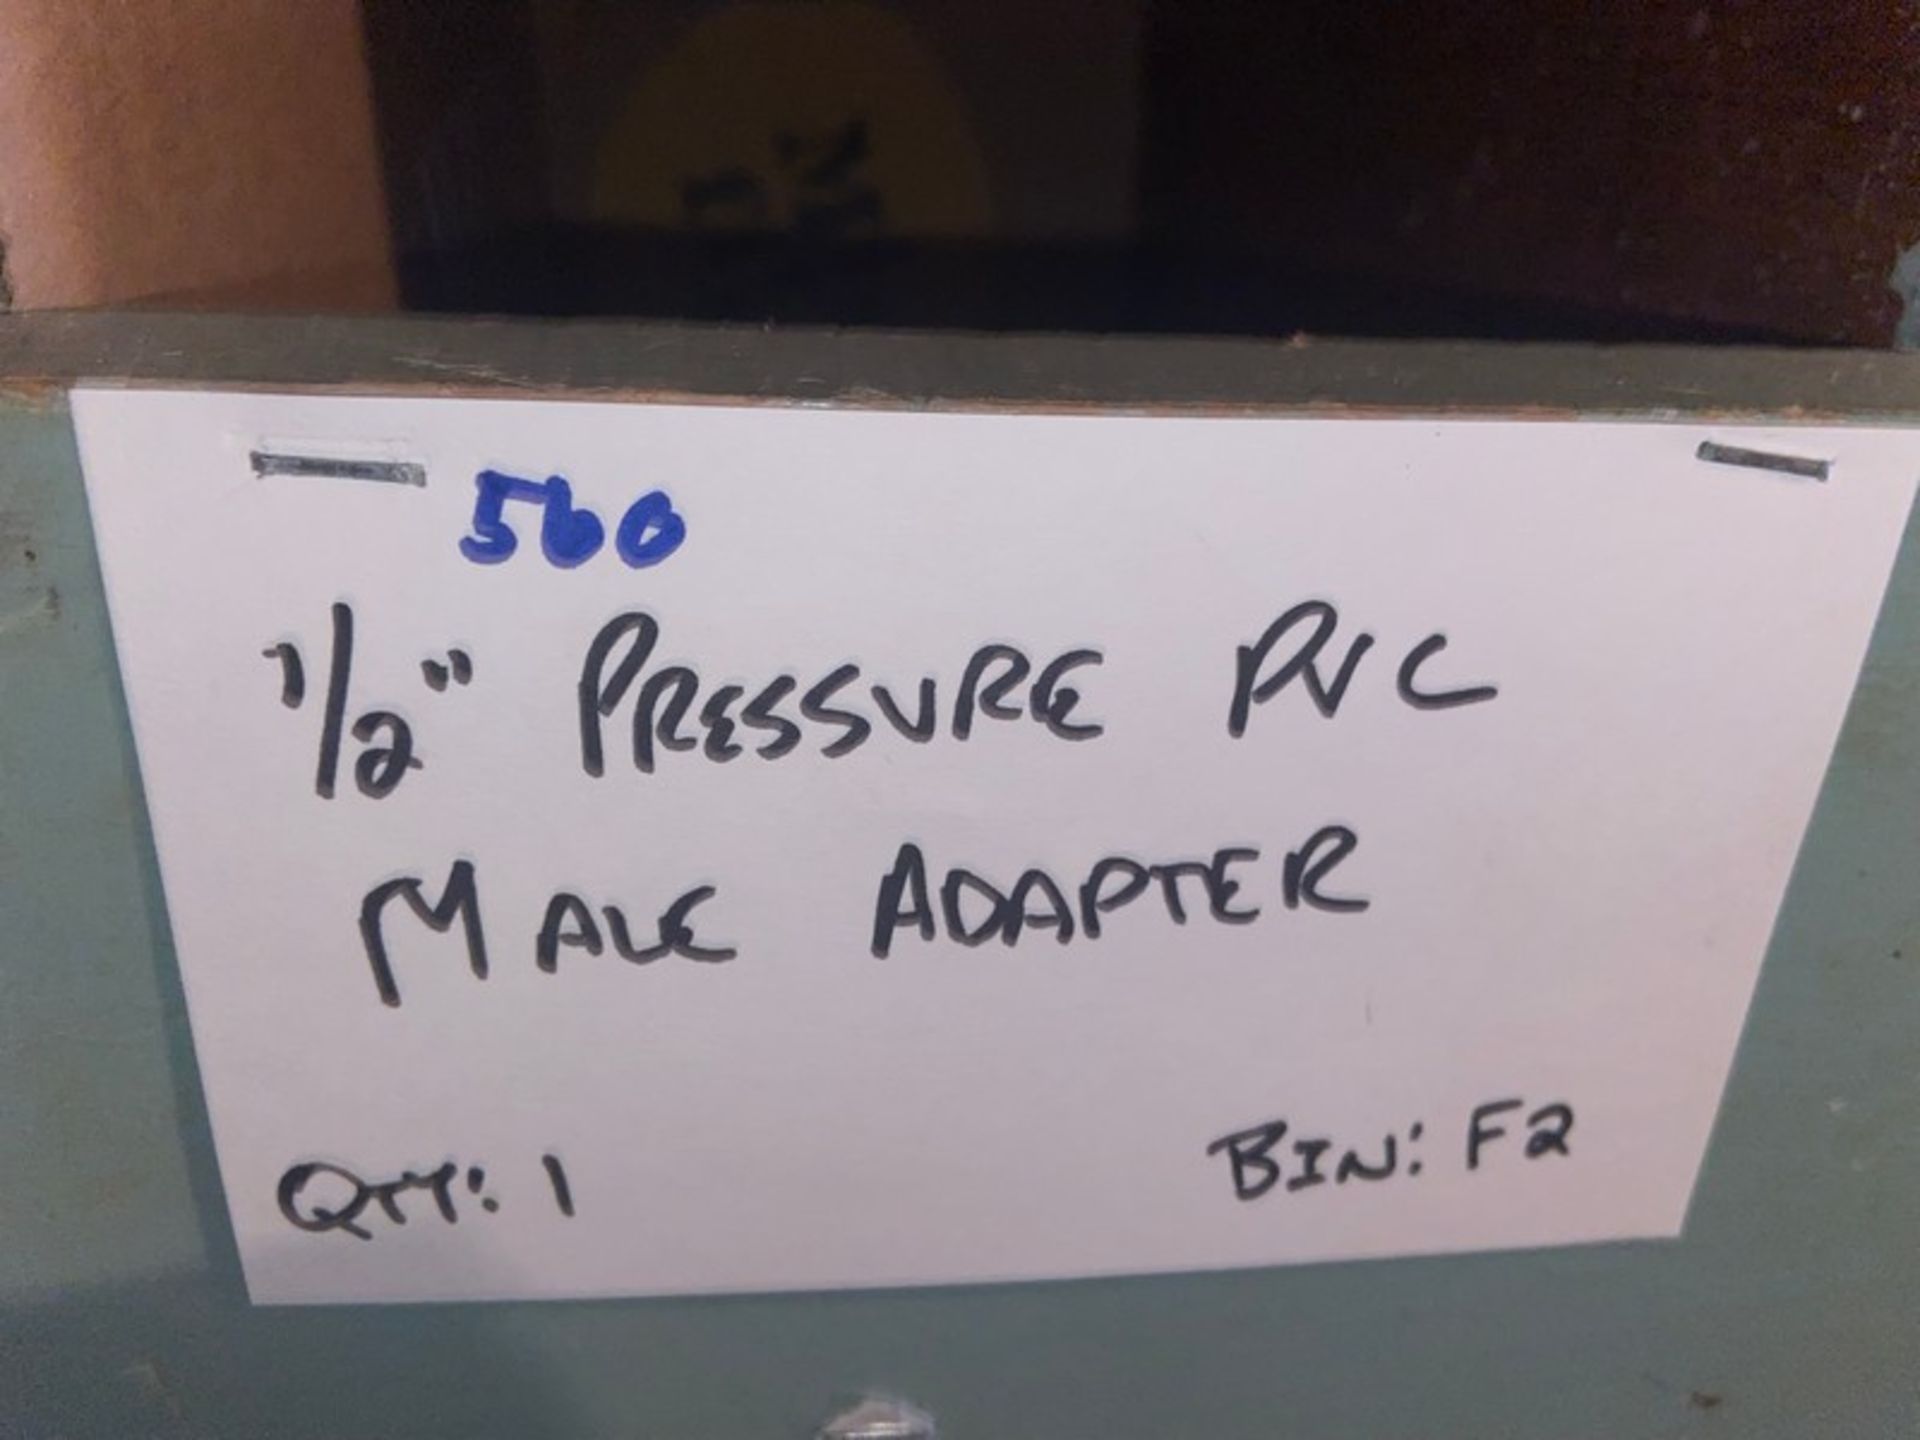 (1) 1/2" Pressure PVC Male Adapter (Bin: F2); (6) 1/2" Pressure PVC Female Adapter (LOCATED IN - Bild 3 aus 11